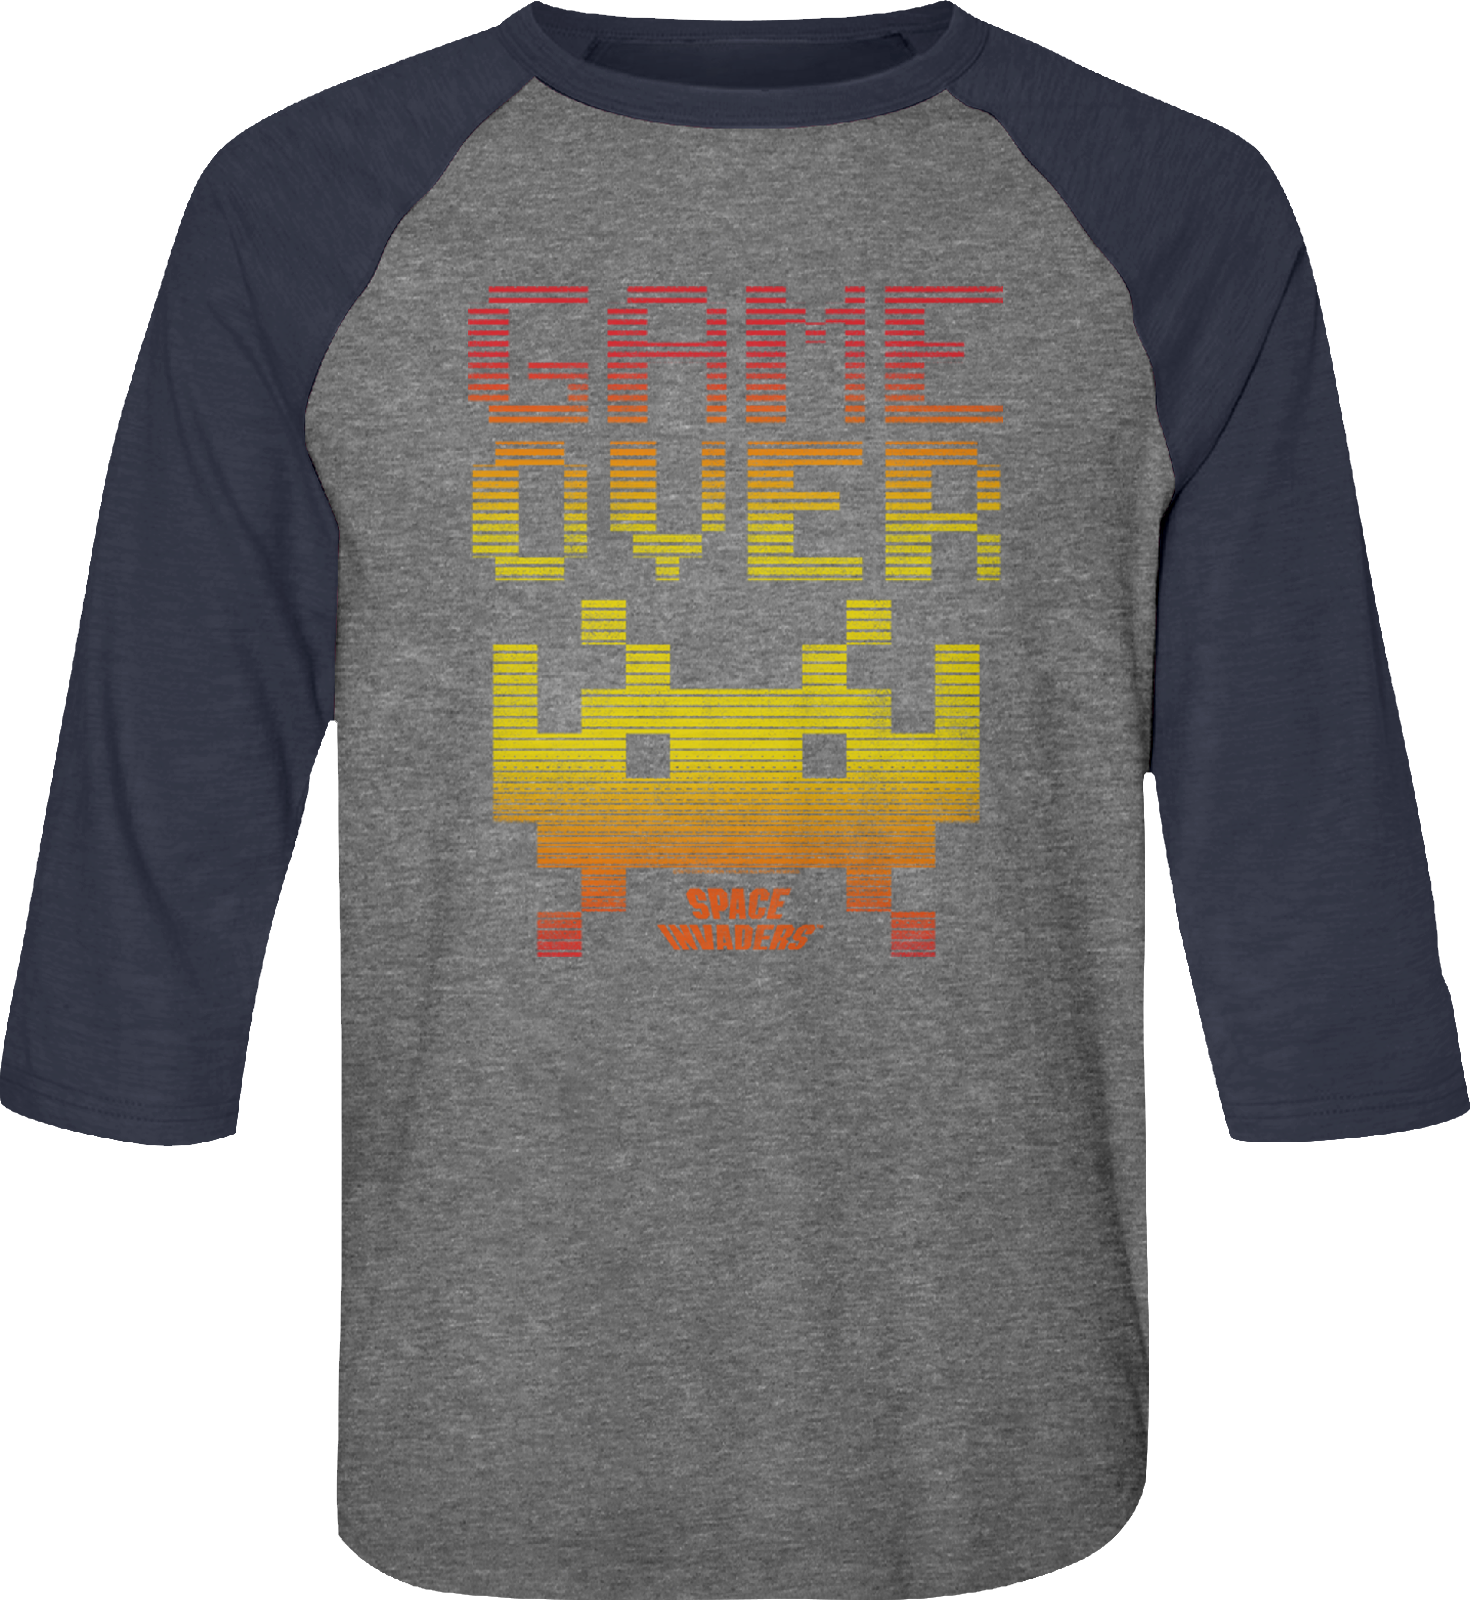 Game Over Space Invaders Raglan Baseball Shirt